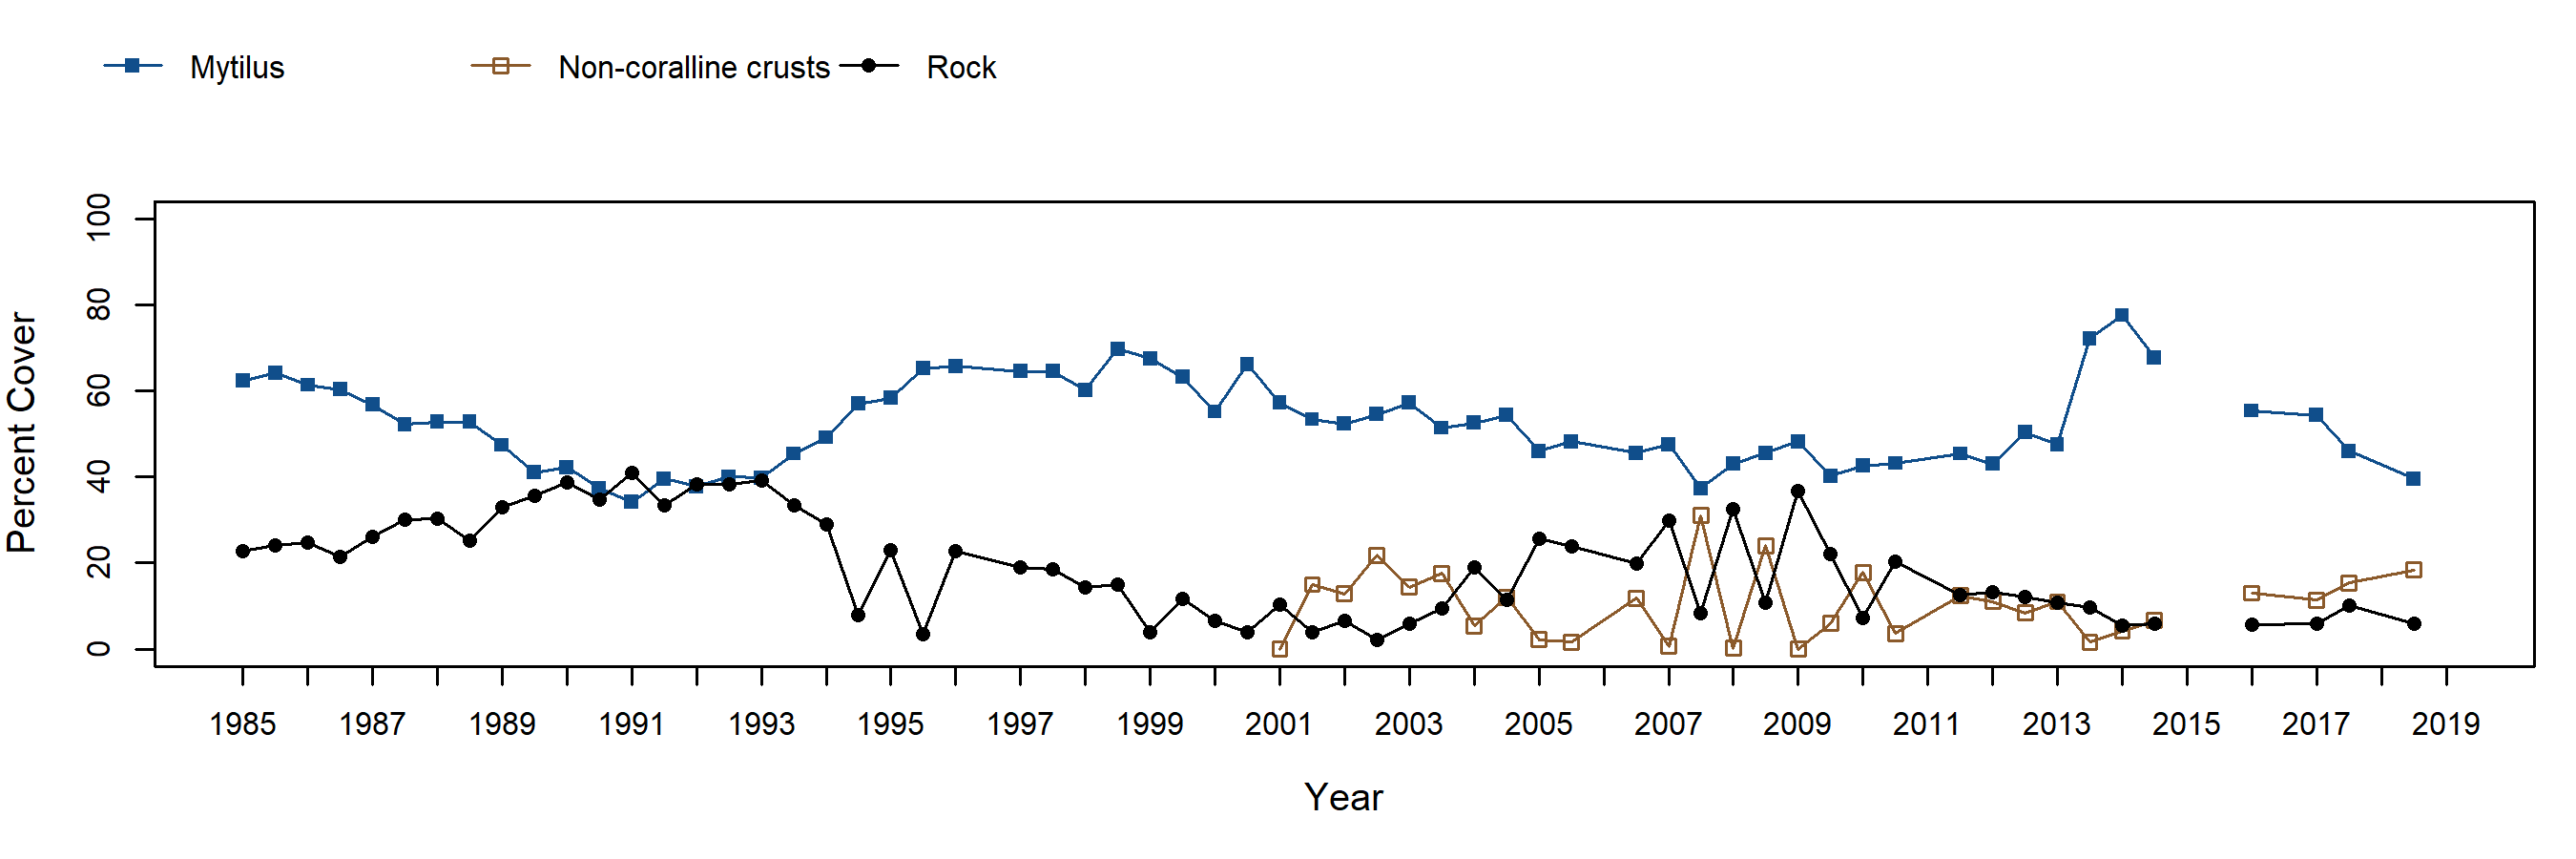 Otter Harbor Mytilus trend plot